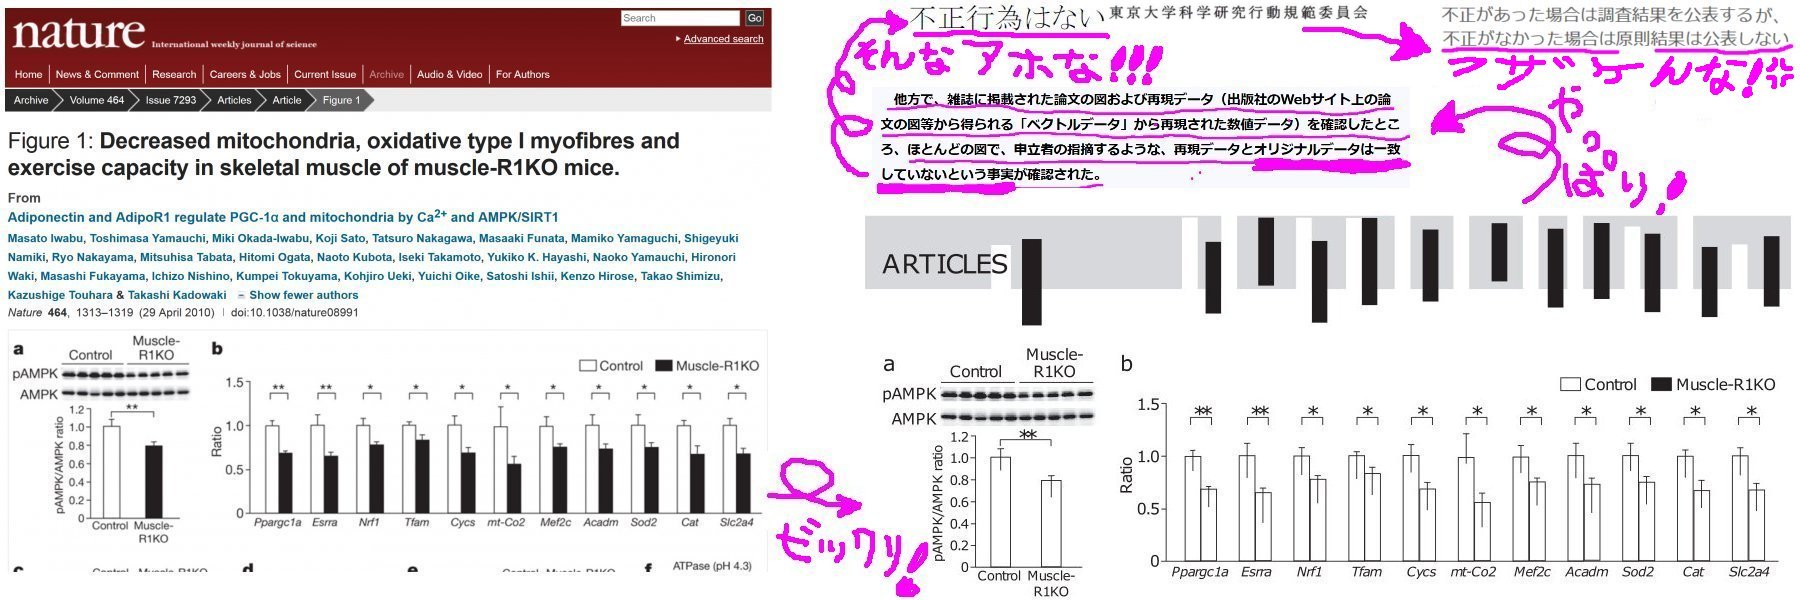 東京大学が医学部研究不正疑惑論文に関する調査報告書を国民に開示しないのは違法（総務省審査会第4部会の判断）